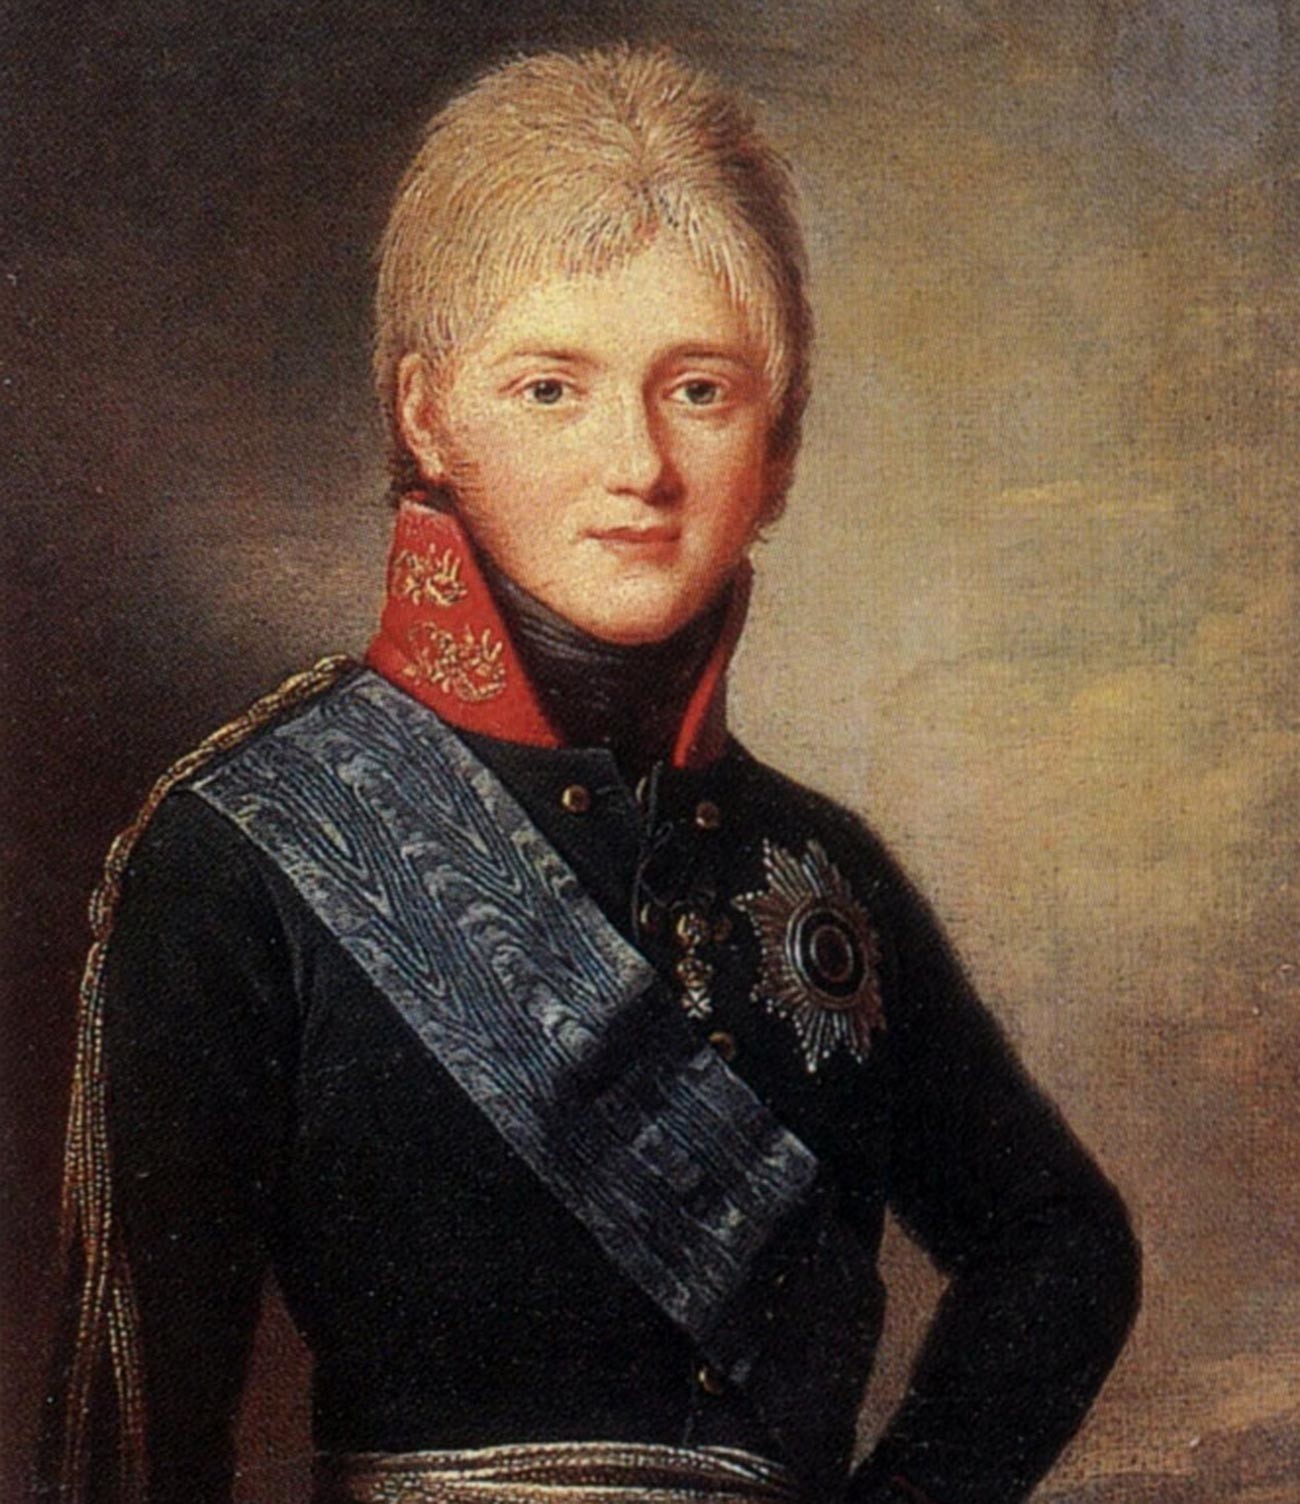 Il granduca Aleksandr Pavlovich (il futuro imperatore Alessandro I)
